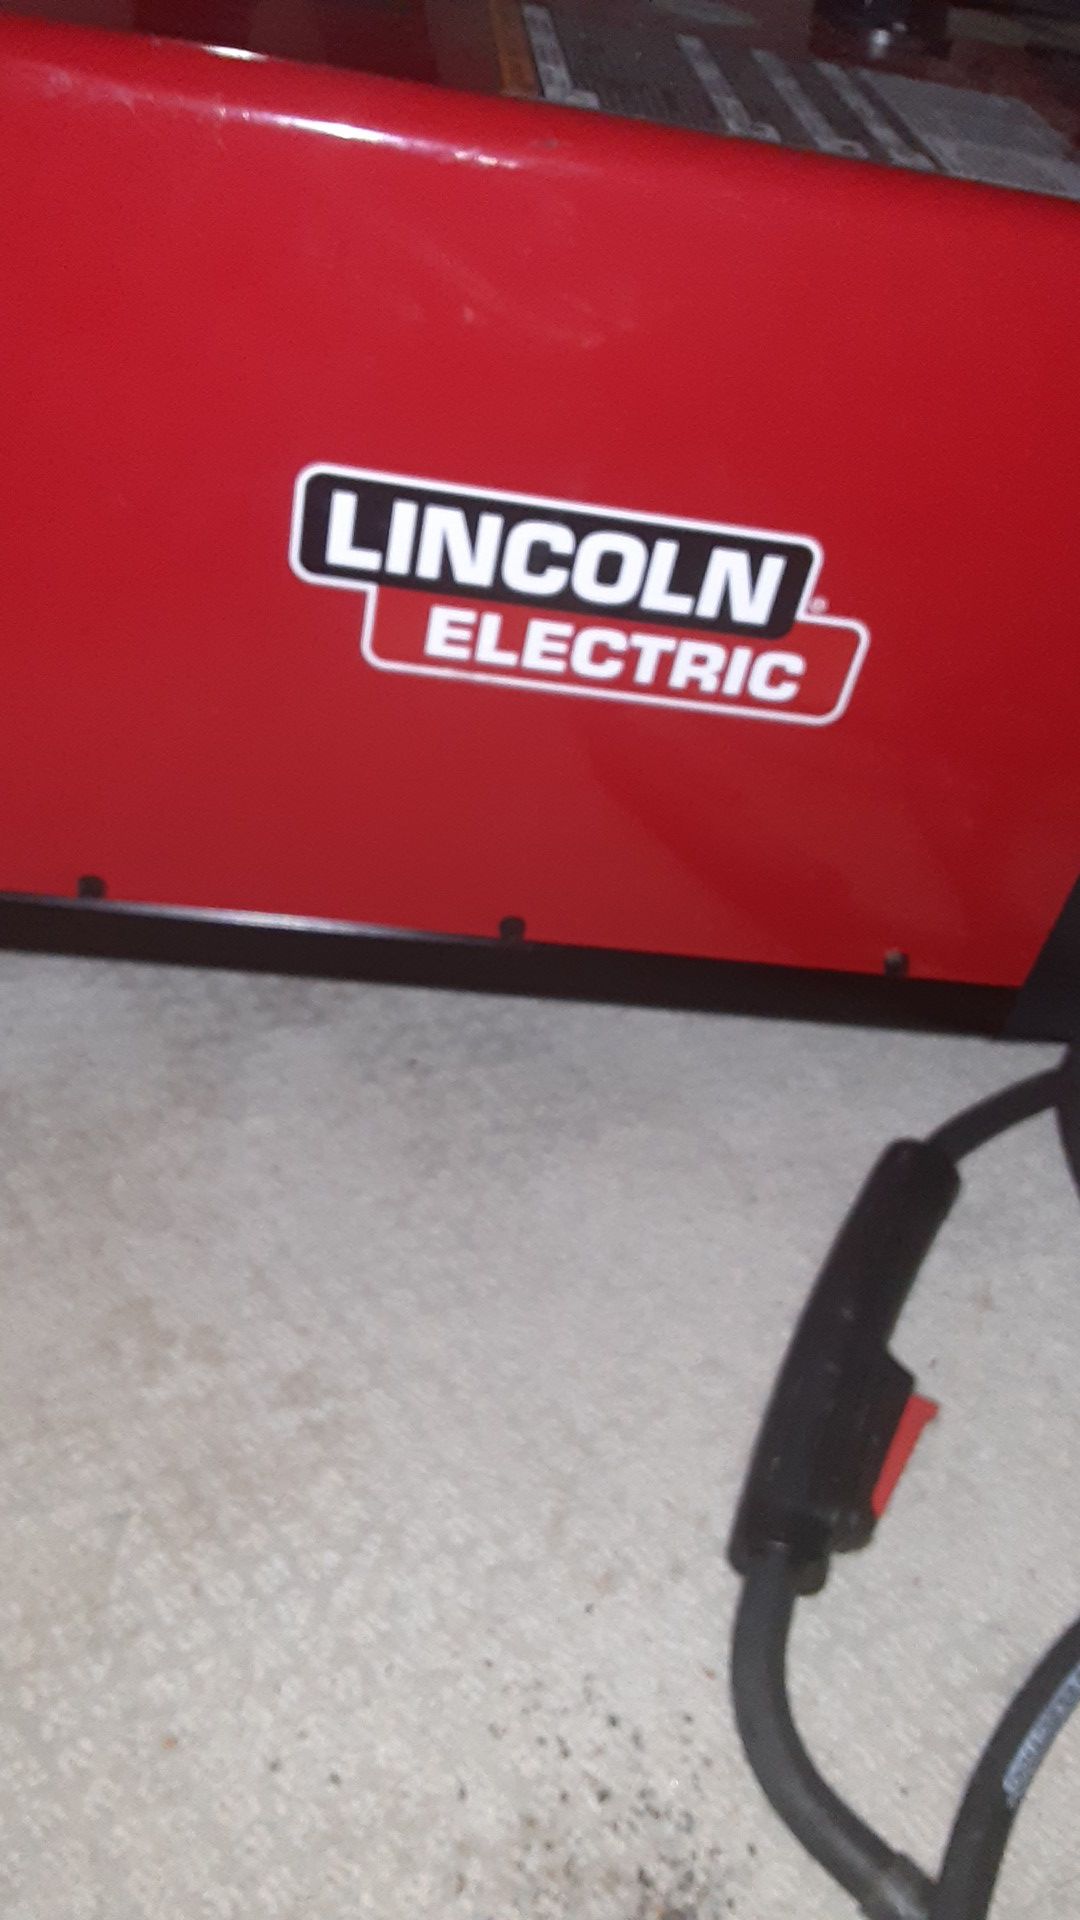 Lincoln electic welder